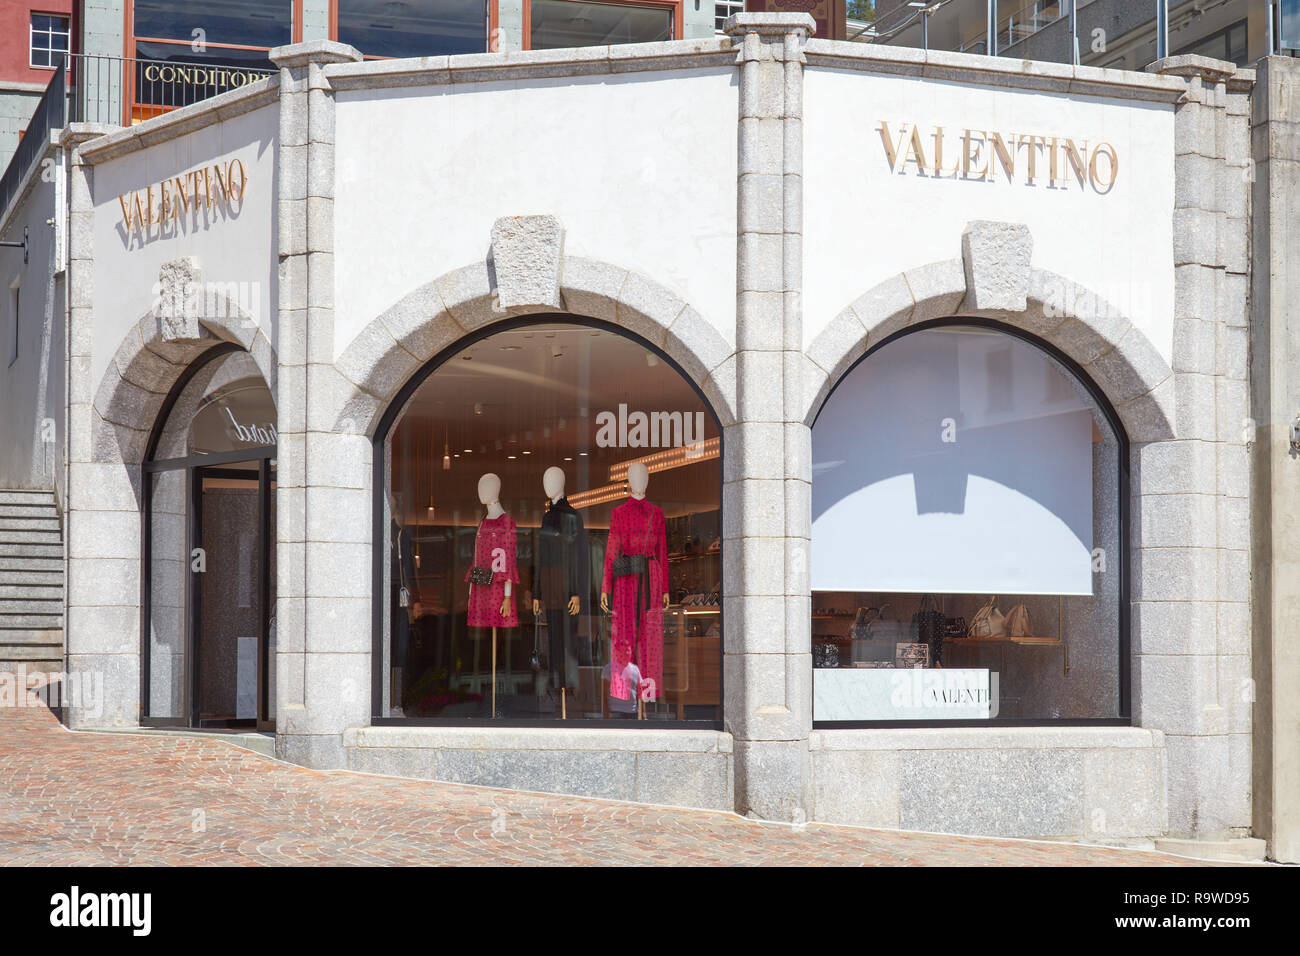 SANKT MORITZ, SCHWEIZ - 16. AUGUST 2018: Valentino Luxus an einem sonnigen  Sommertag in Sankt Moritz, Schweiz Stockfotografie - Alamy